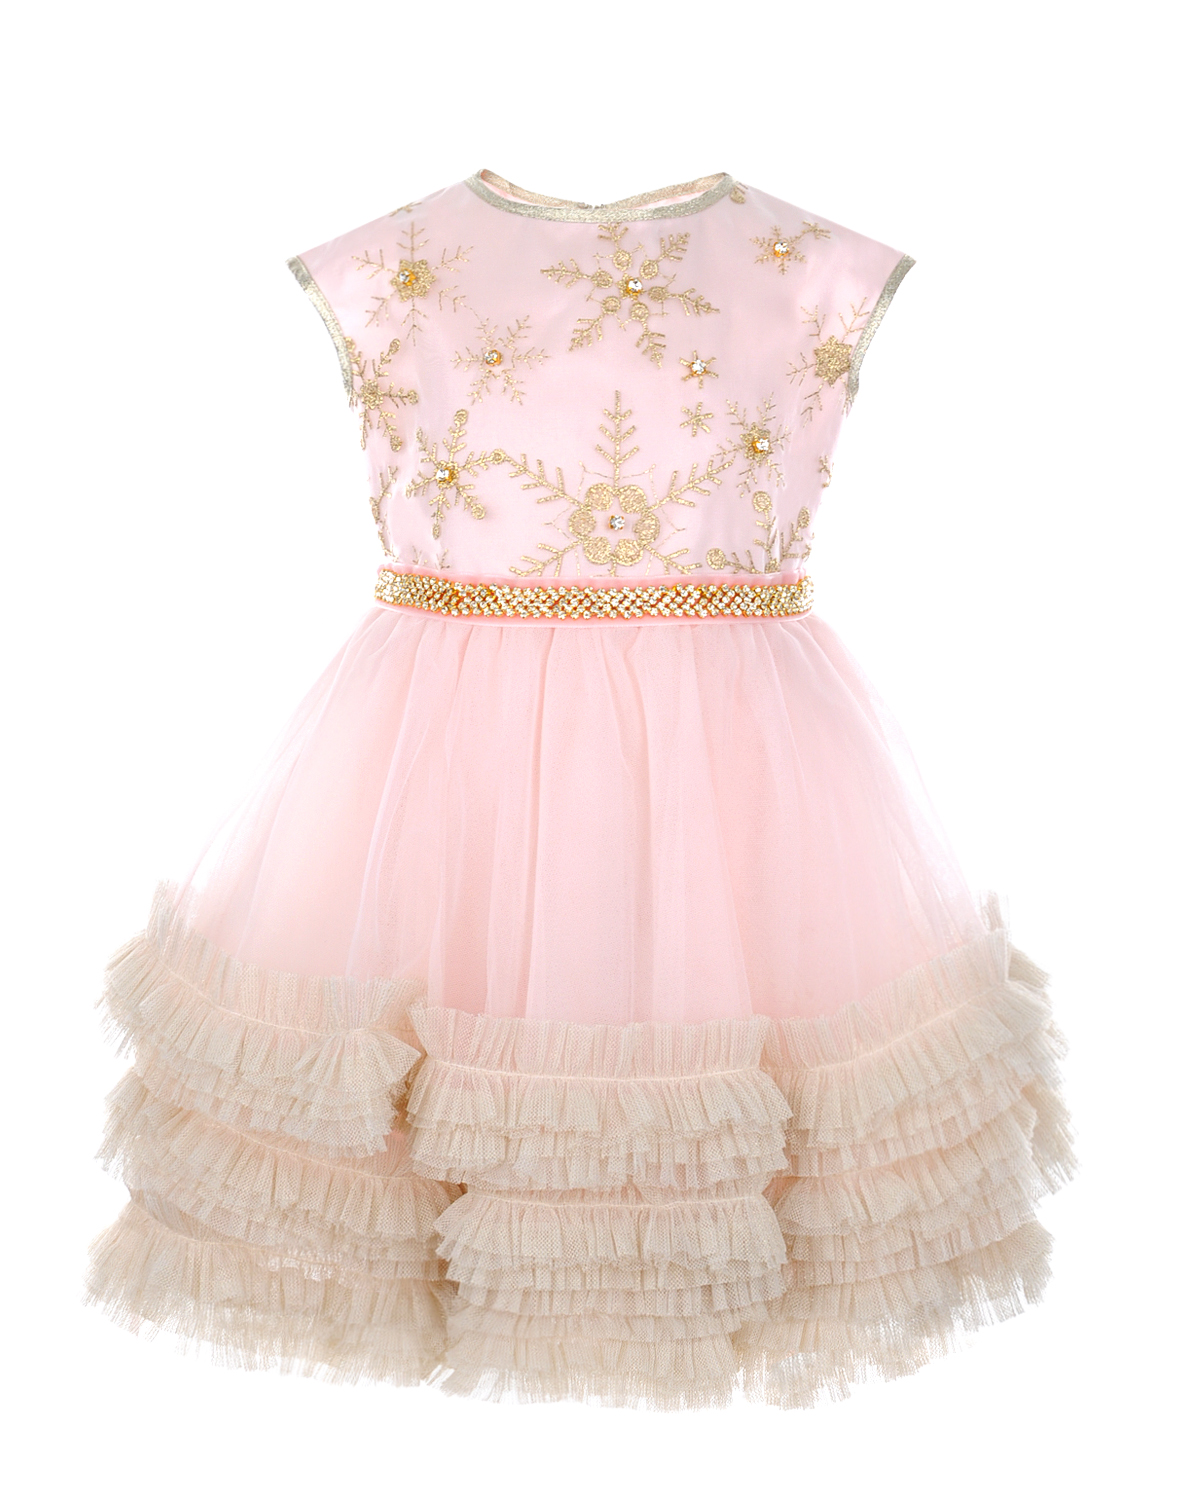 Розовое платье с многоярусной юбкой Lesy детское - фото 1